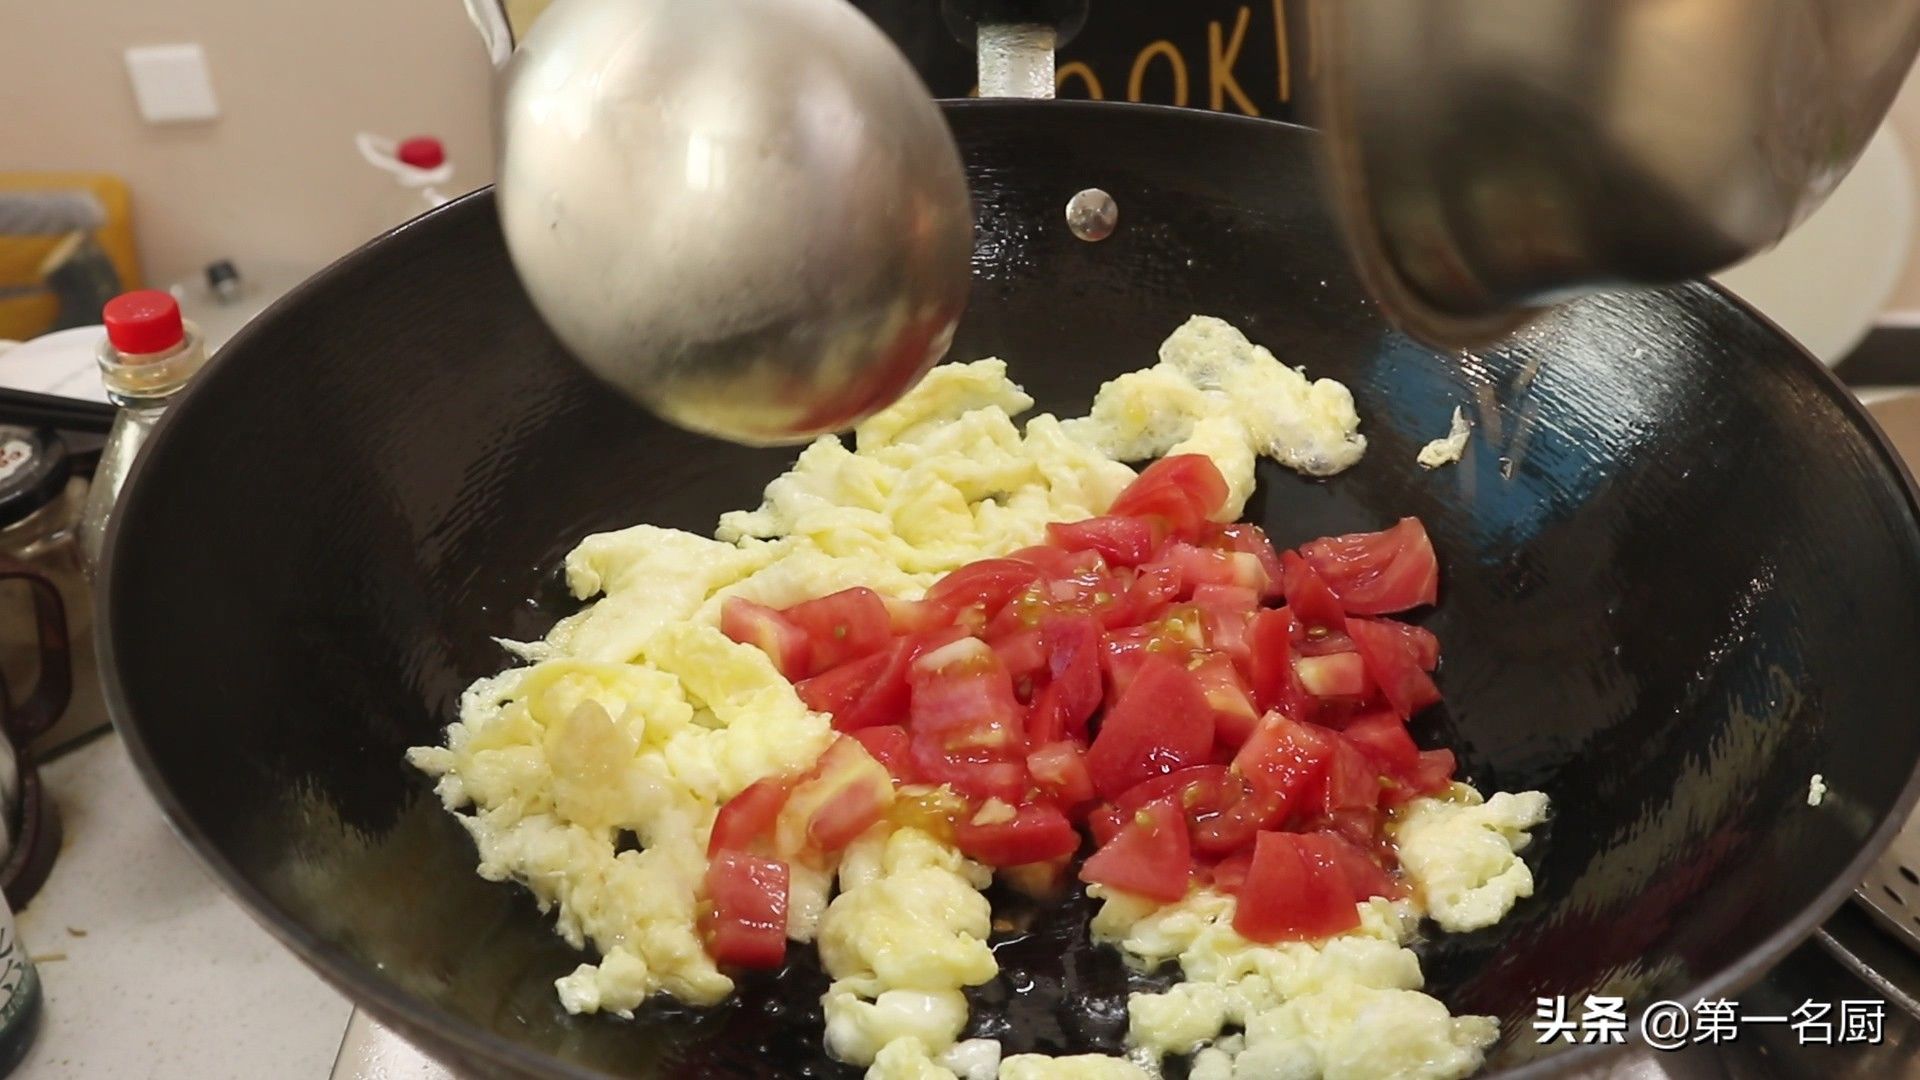 番茄炒蛋盖浇饭（西红柿鸡蛋盖浇饭”的家常做法）-第7张图片